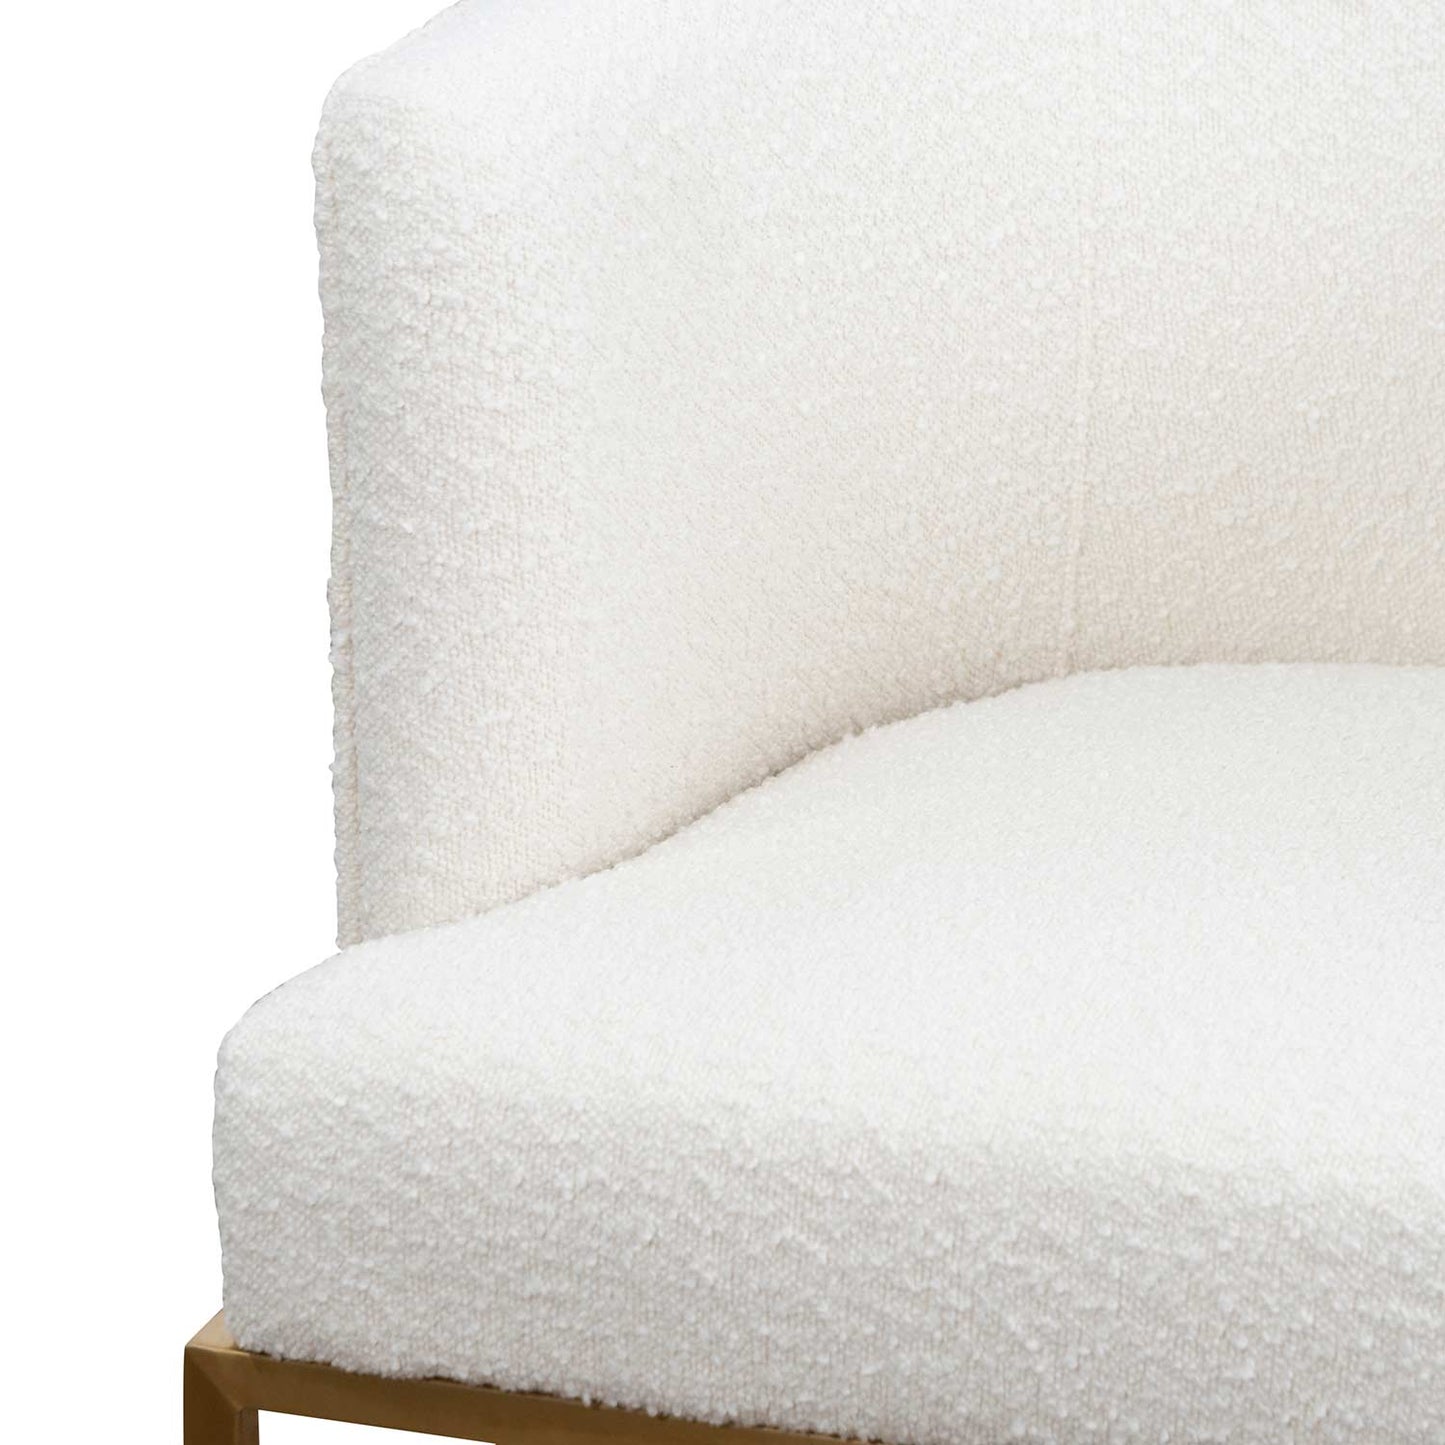 Beverly | Black, Hollywood Style Velvet Dining Chair | White